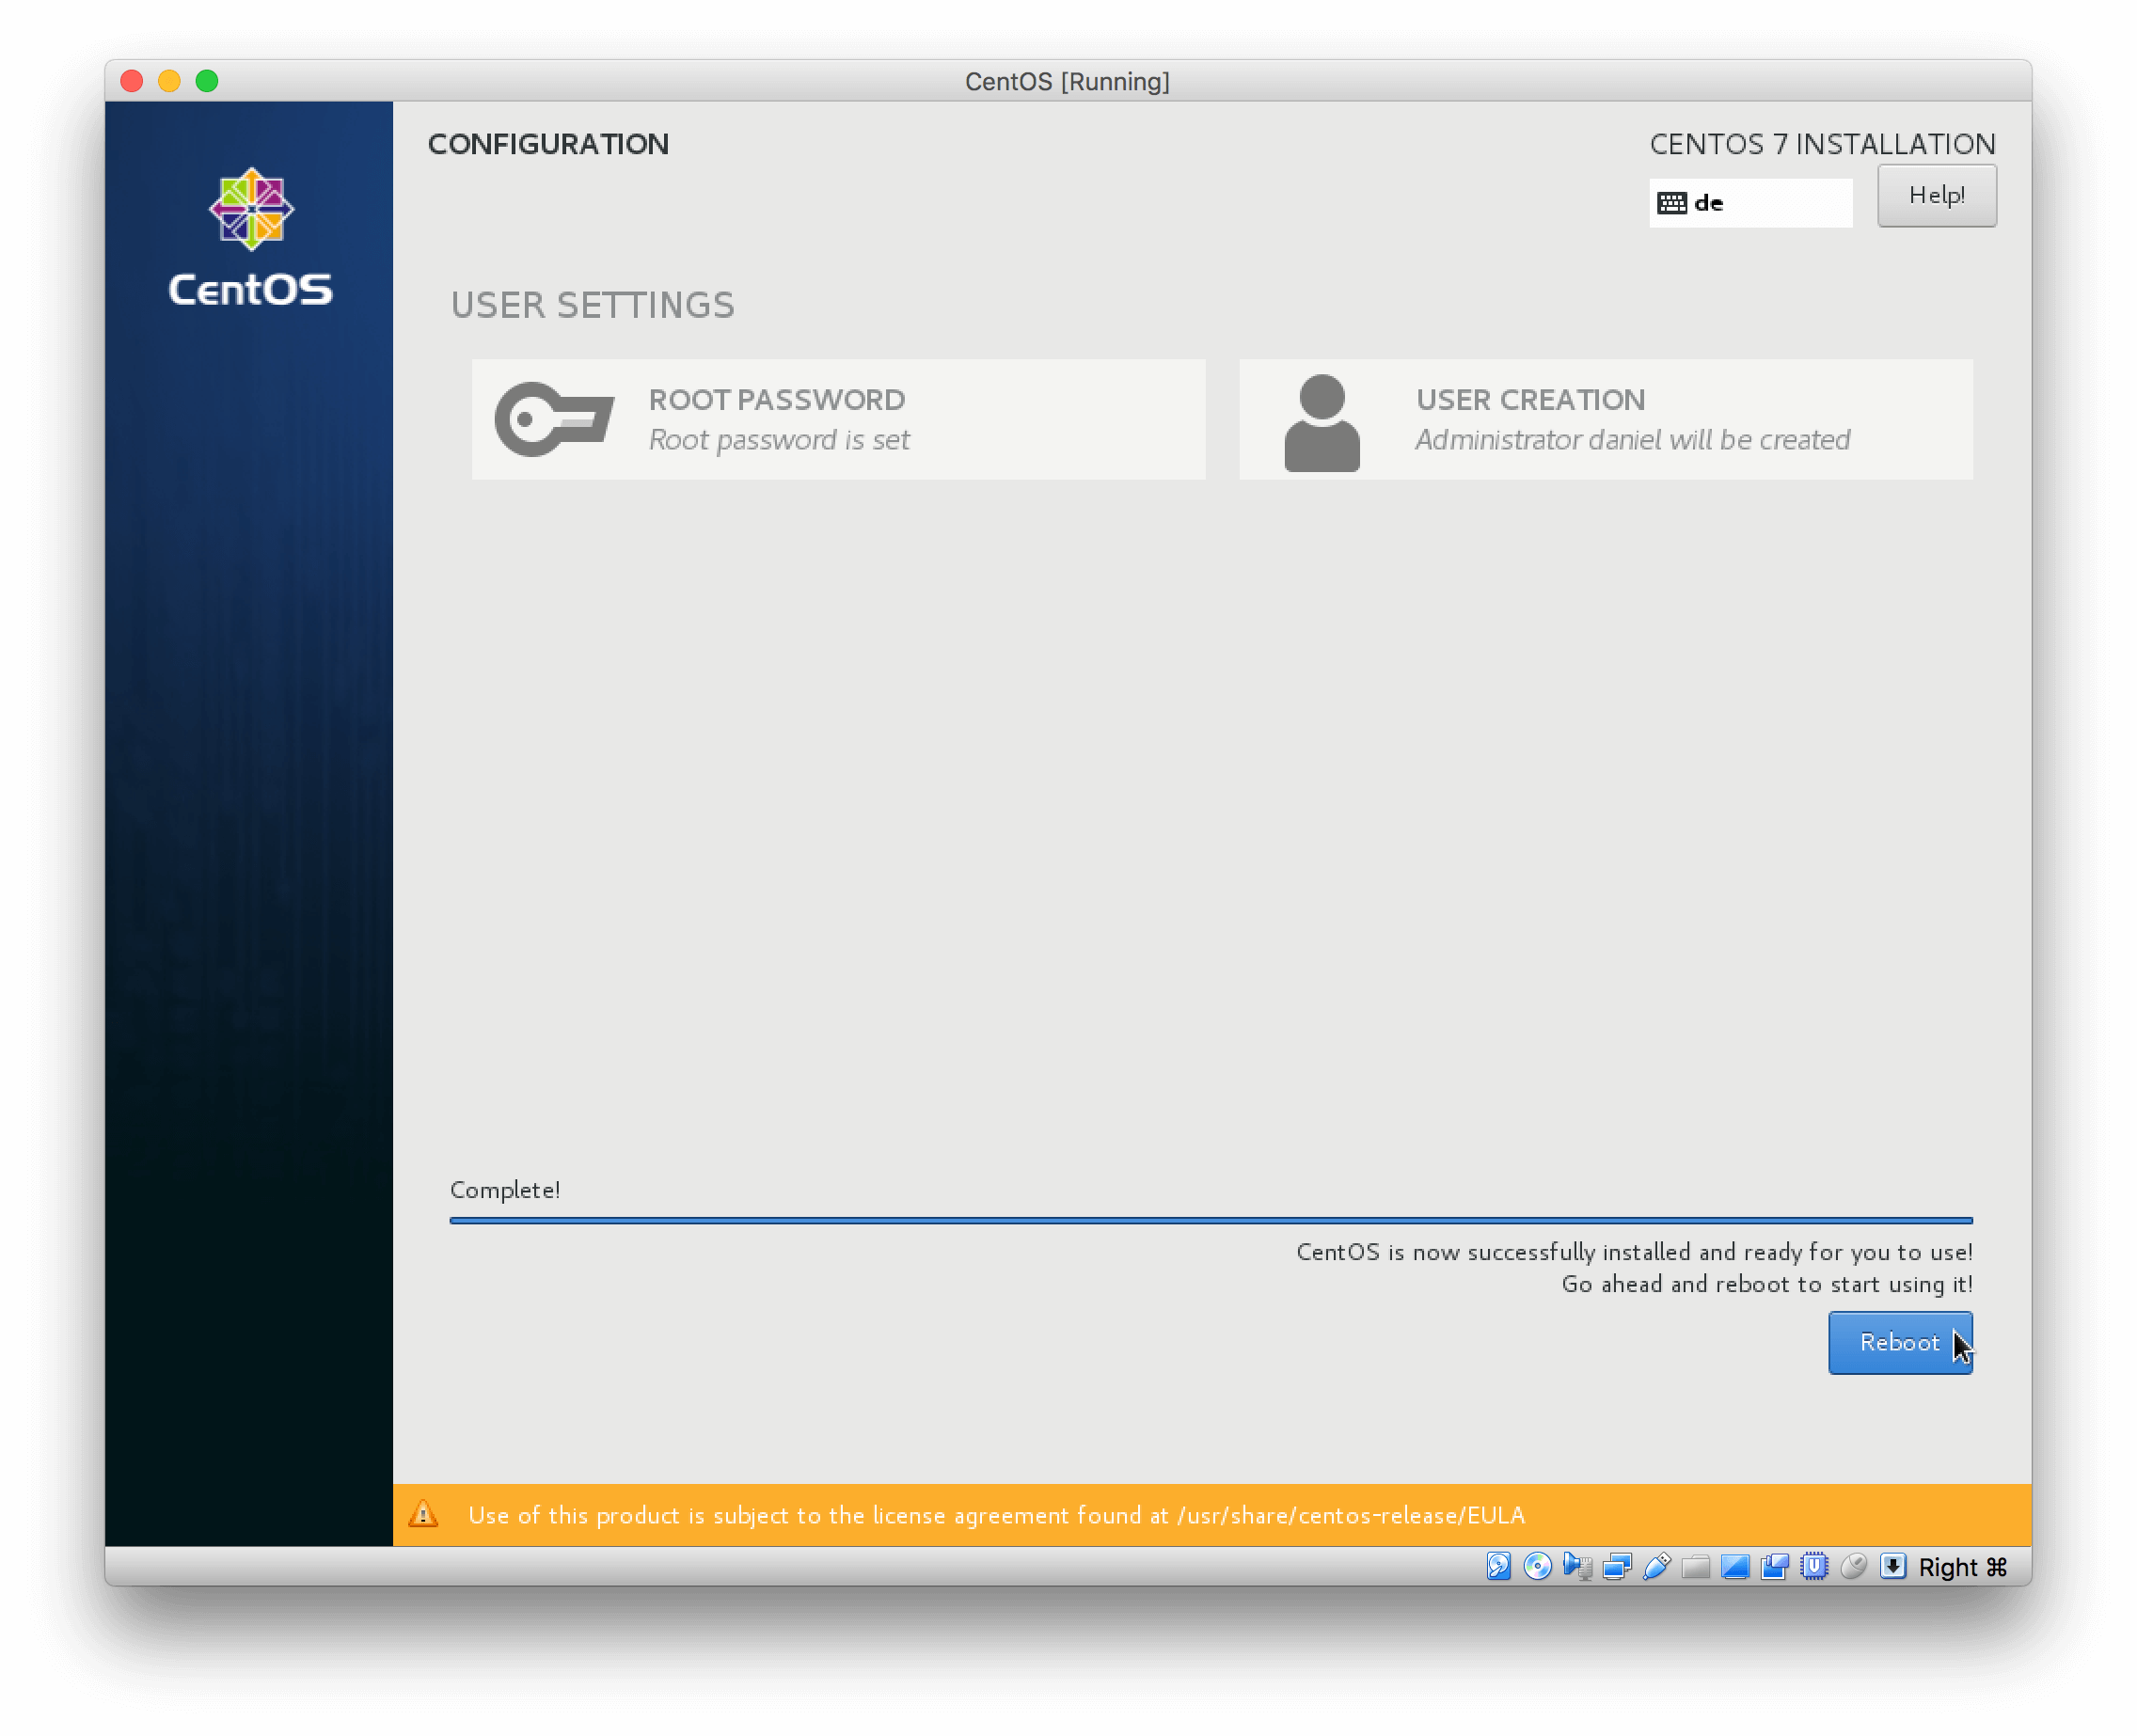 Install CentOS 7 - Reboot